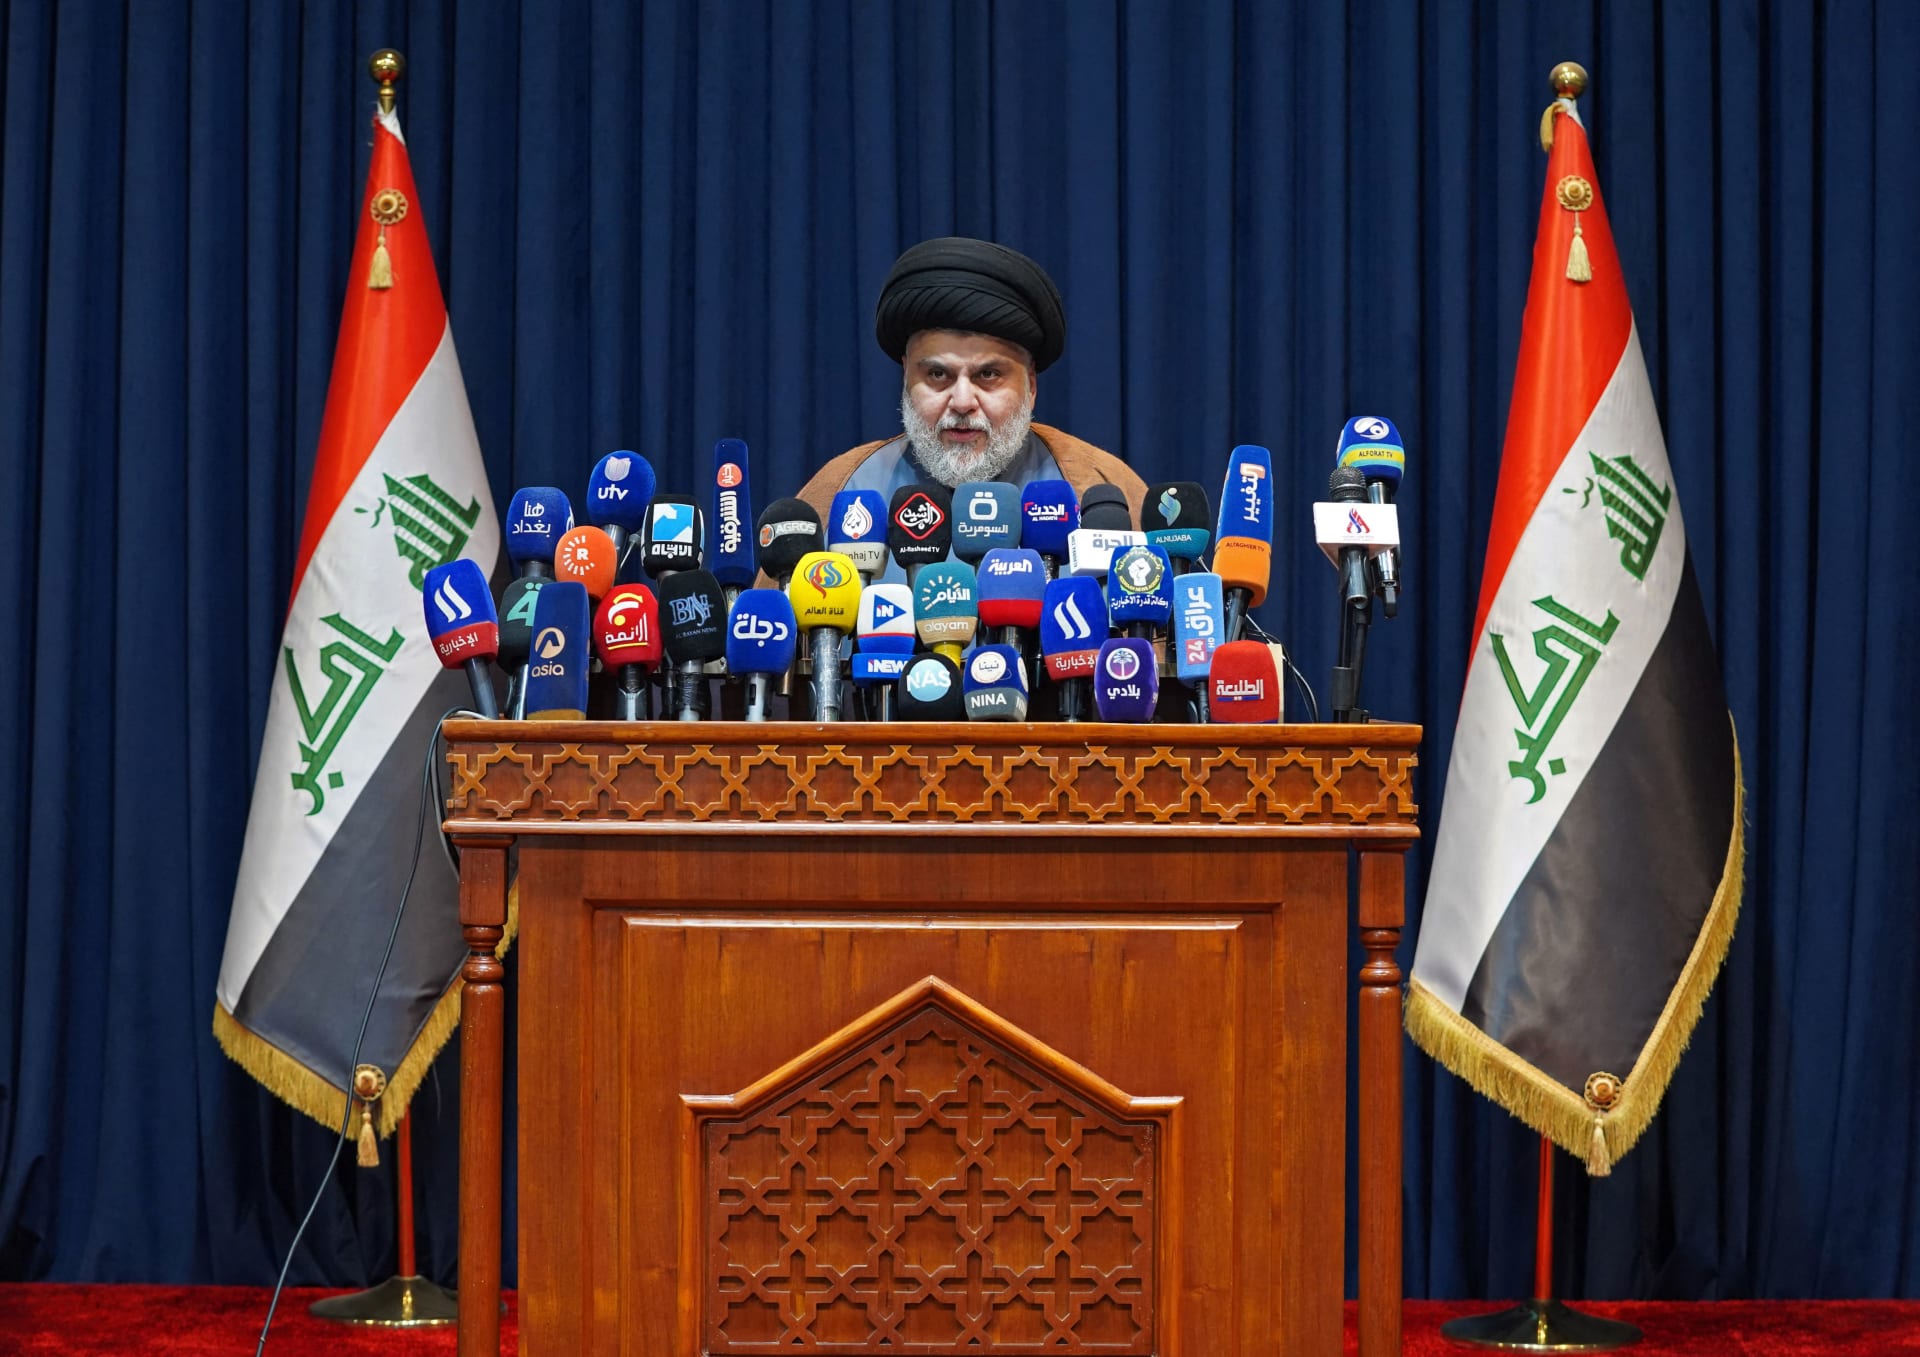 زعيم التيار الصدري الشيعي في العراق، مقتدي الصدر